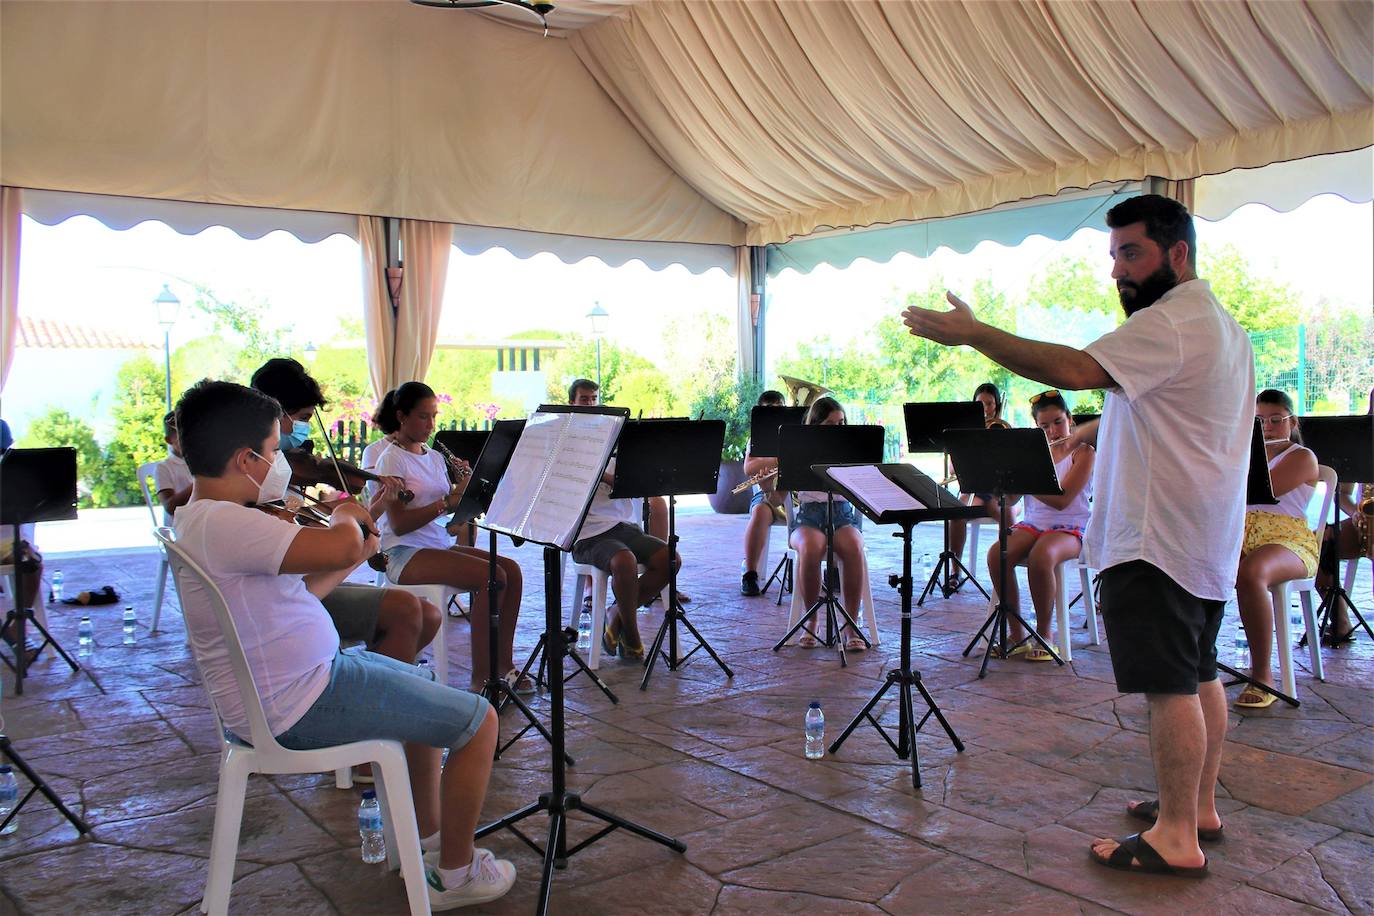 El lunes se celebró un concierto en la Piscina Municipal de Herrera del Duque